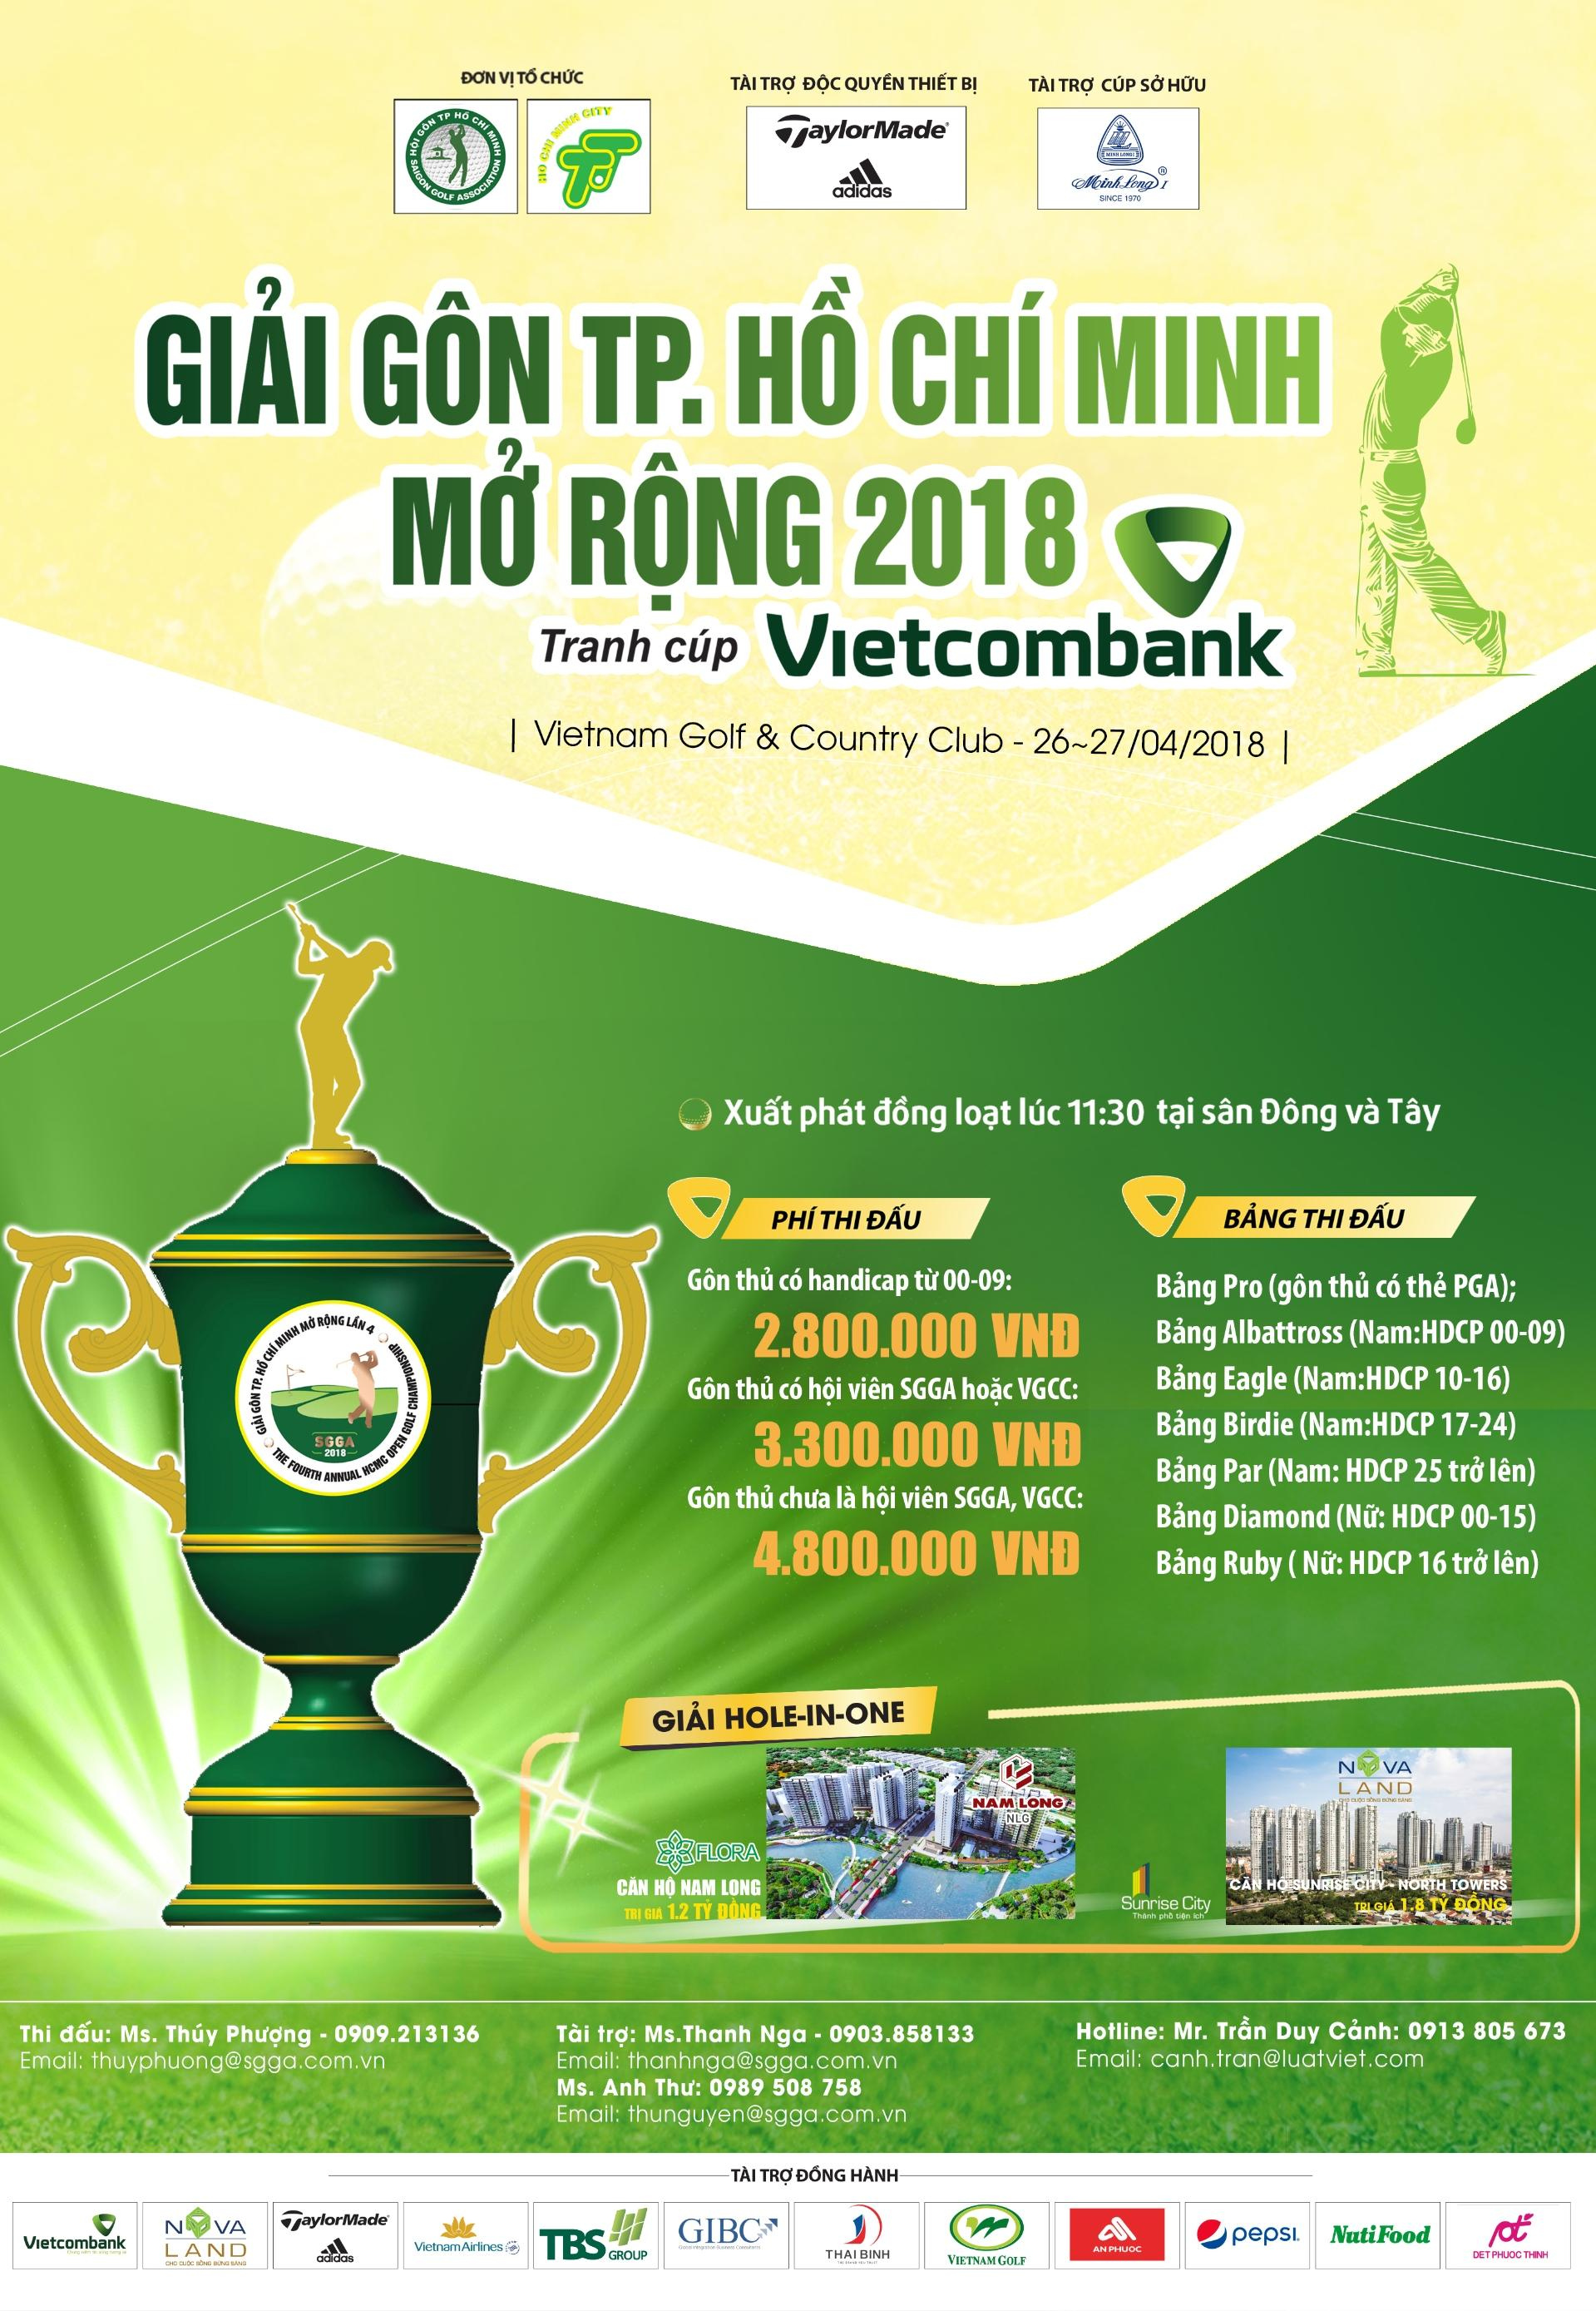 Giải golf TP.HCM mở rộng 2018 tranh cúp Vietcombank khai mạc cuối tháng 4